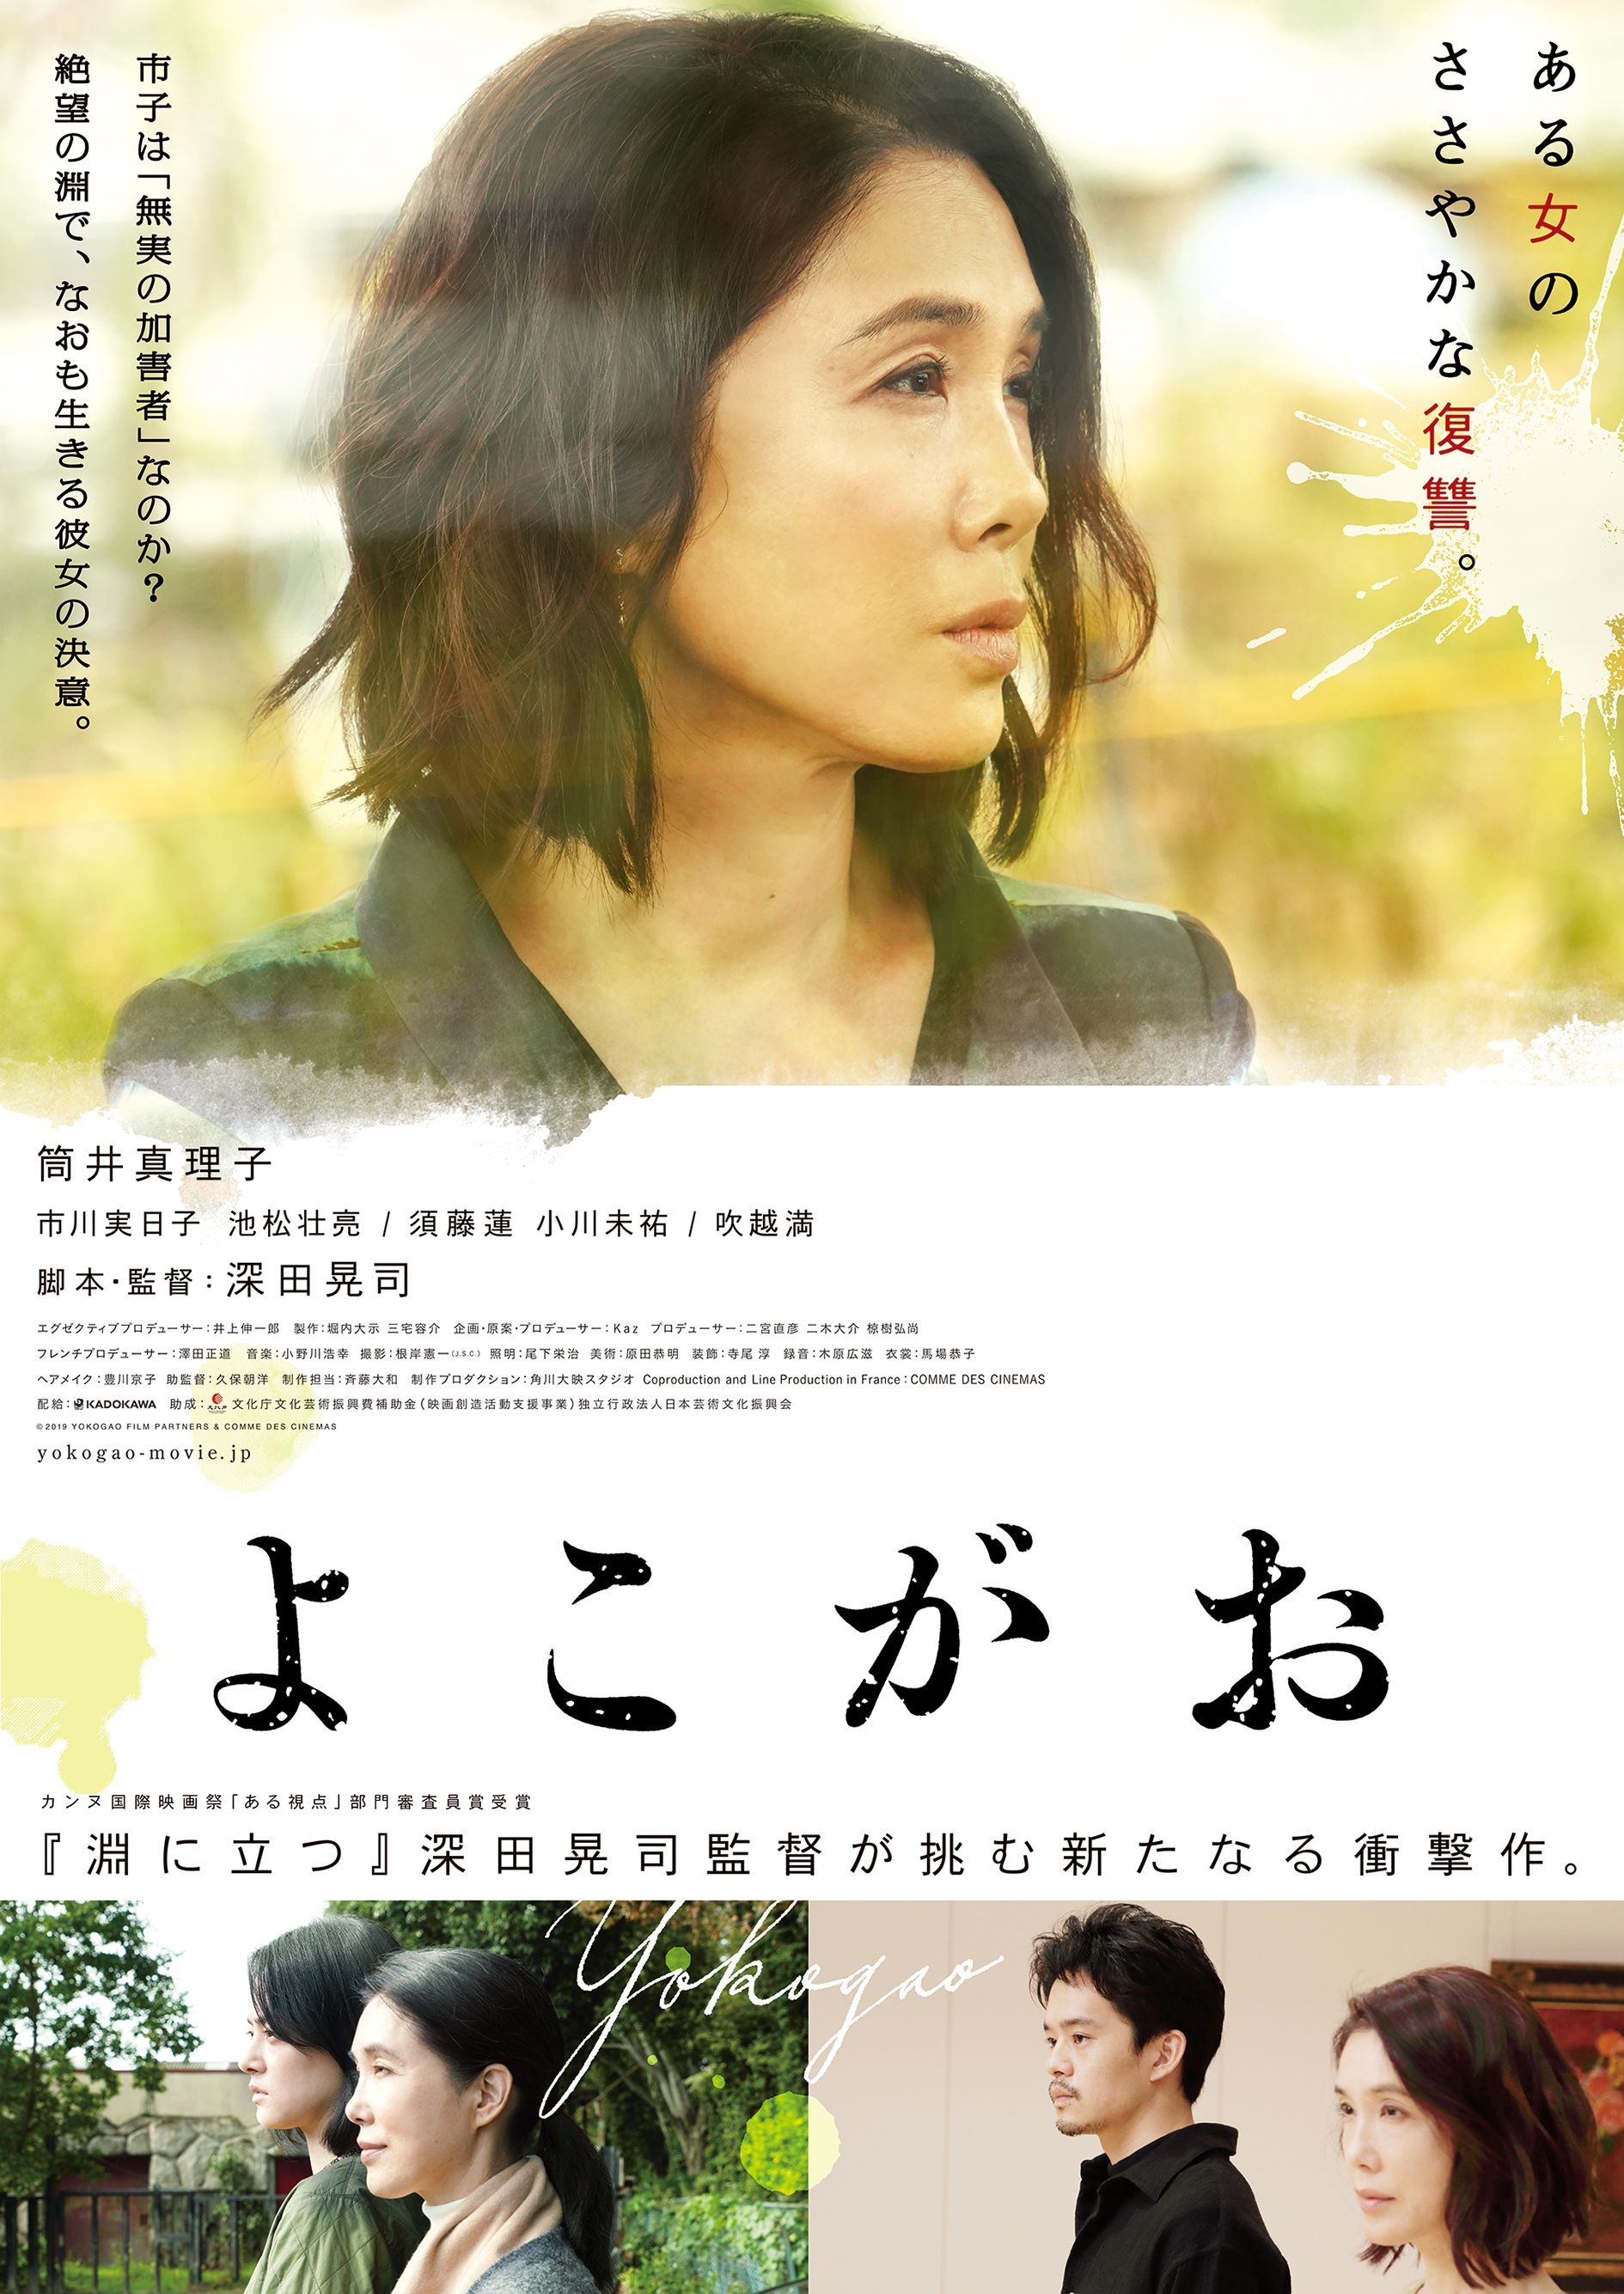 Mega Sized Movie Poster Image for Yokogao (#1 of 3)